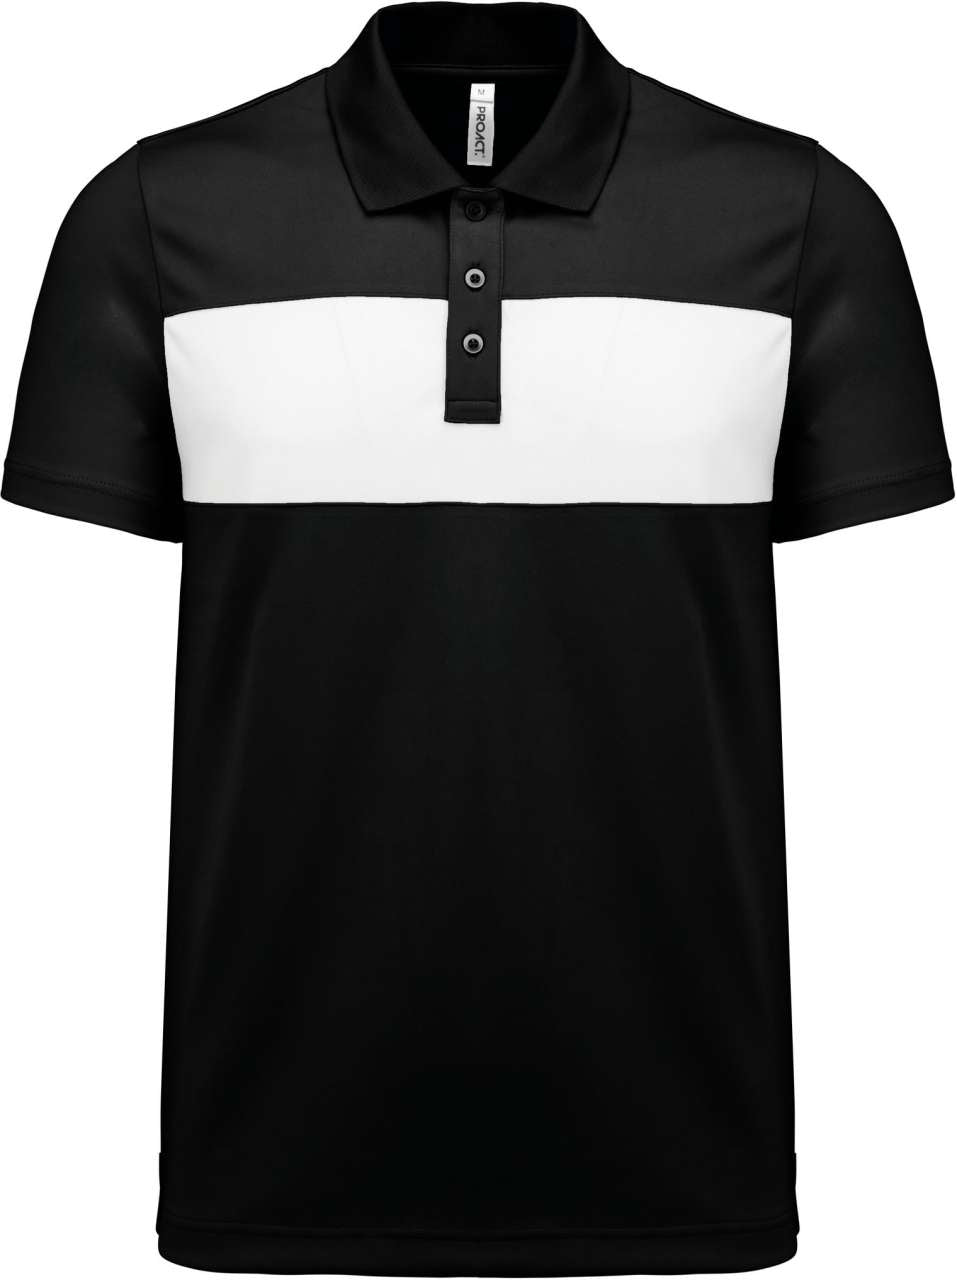 Proact Herren Polo-Shirt Poloshirt Classic Fit kurzarm Oberteil Pique